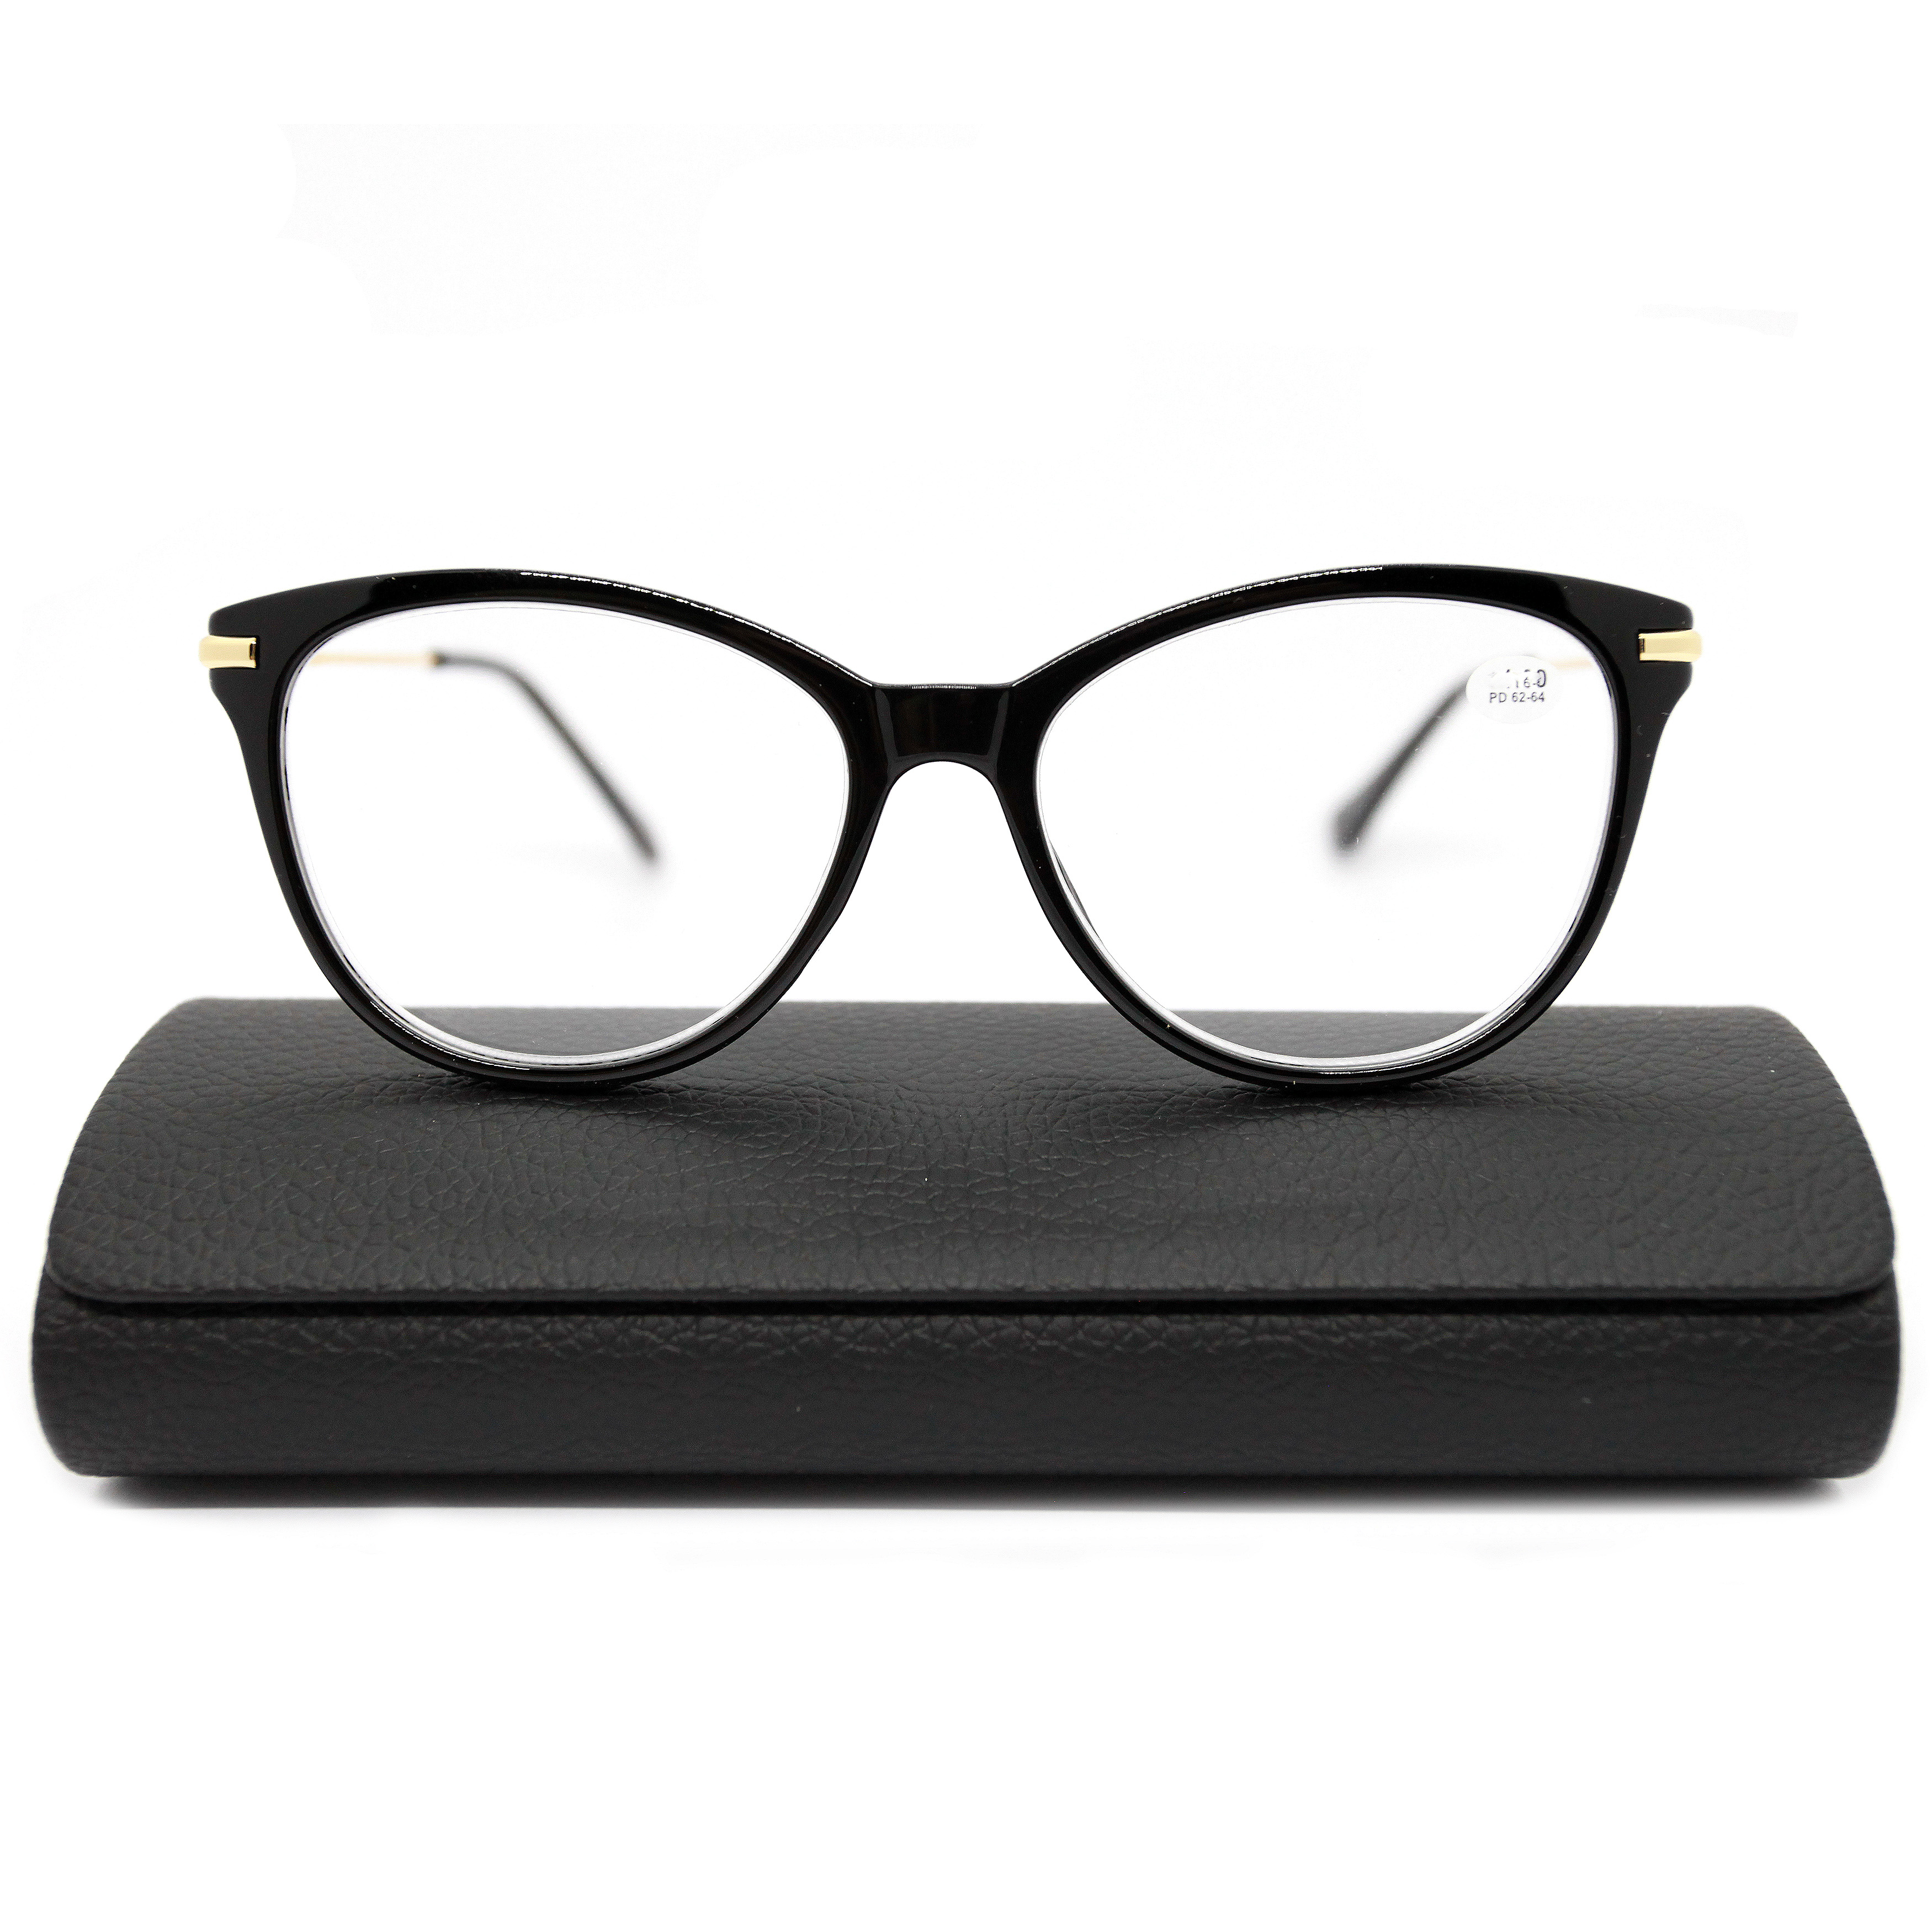 Готовые очки Fabia Monti 0202 +3,50, c футляром, цвет черный, РЦ 62-64